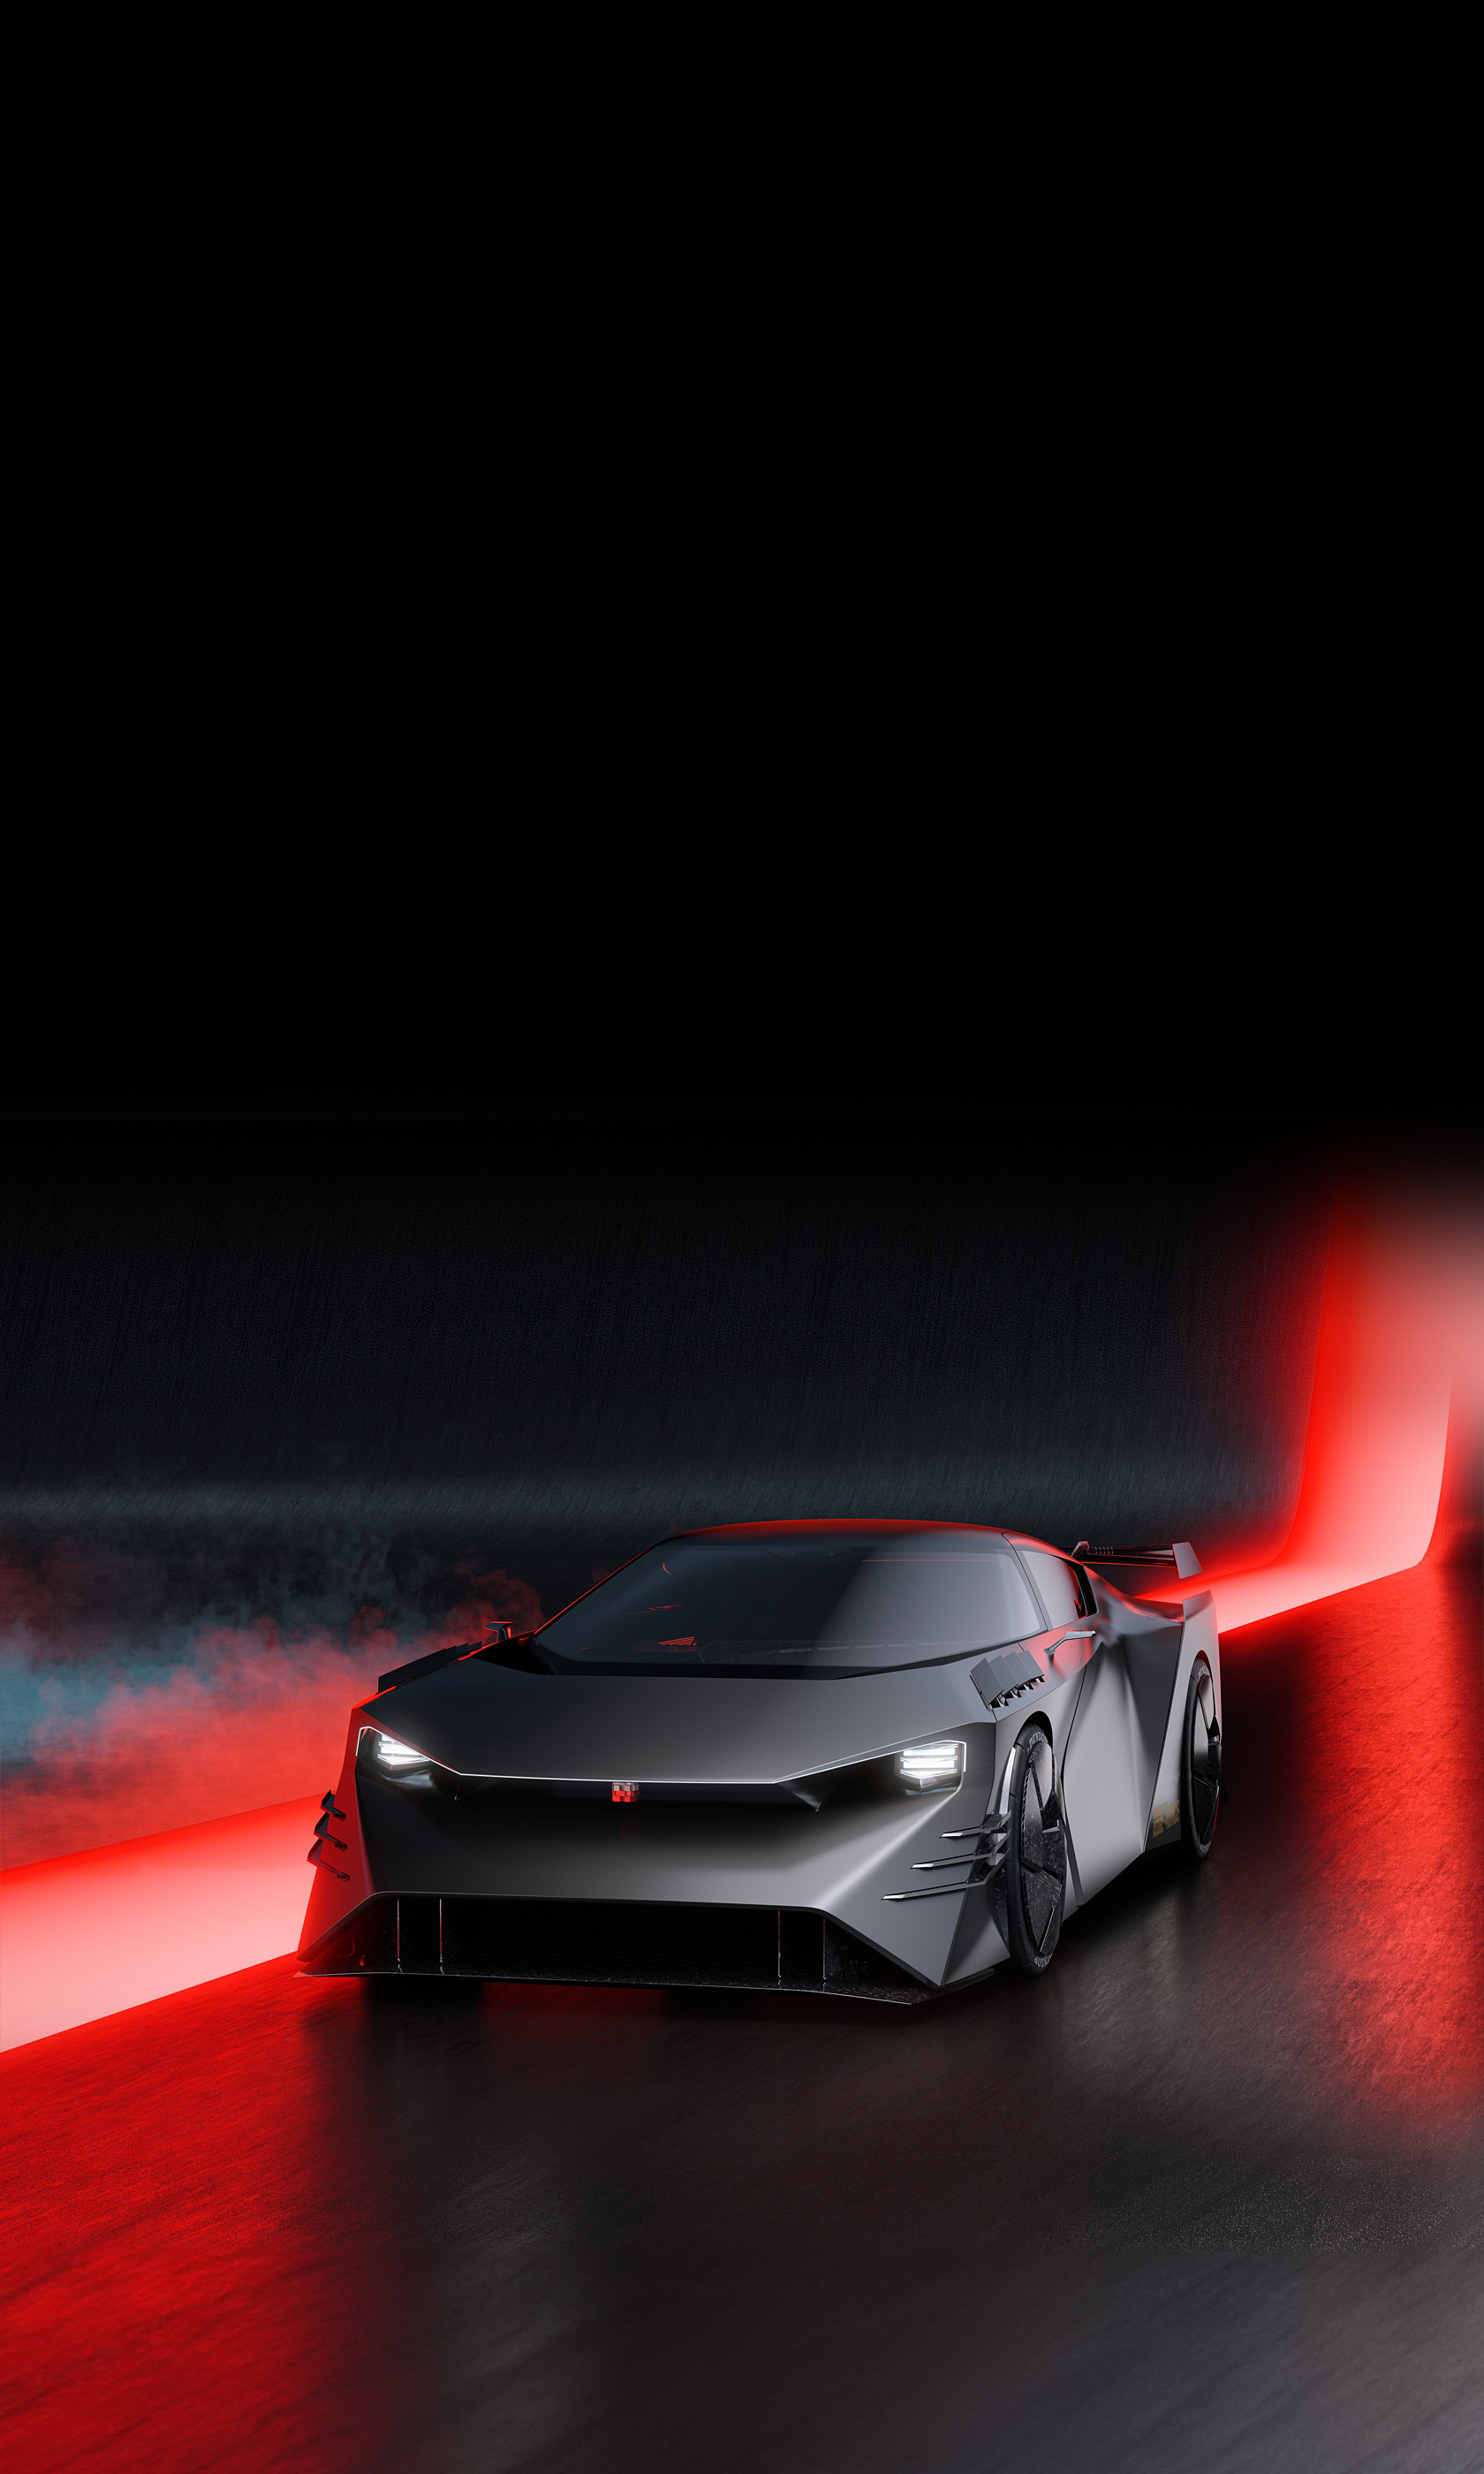  2023 Nissan Hyper Force Concept Wallpaper.